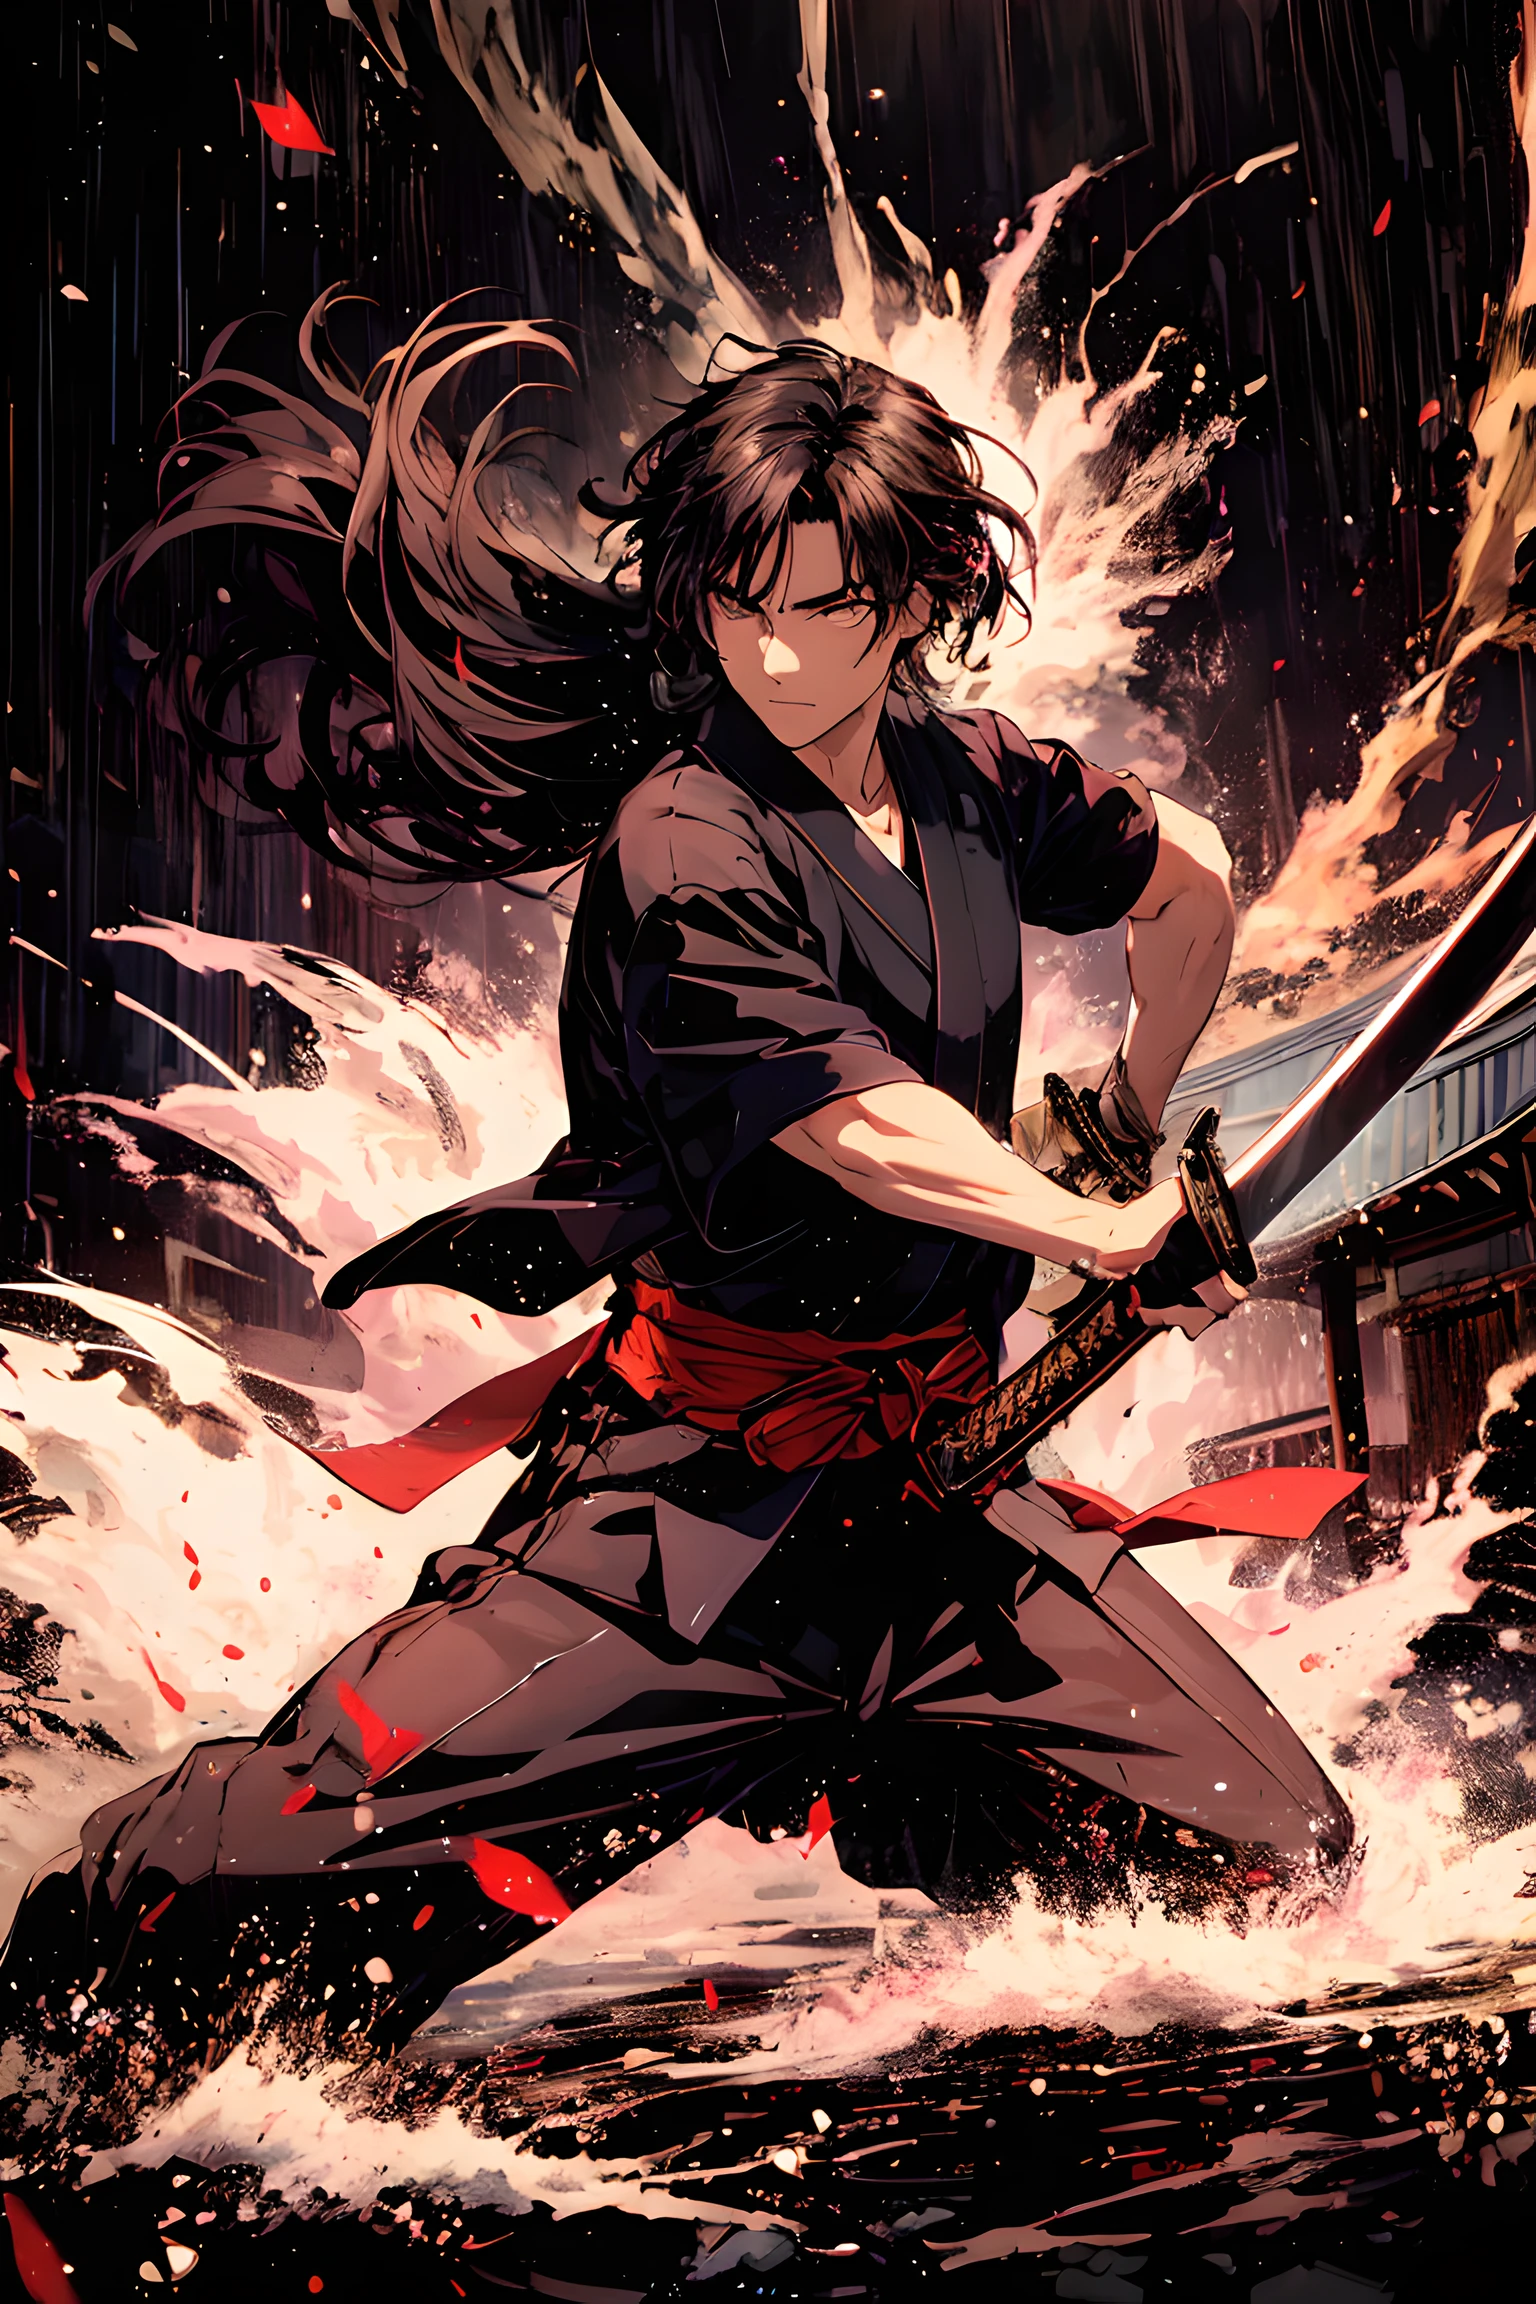 Mufune Toshiro, Toshiro Mifune, samurais japoneses, 55 anos, tronco, Dinâmico, postura de luta, segurando a espada katana, Campo de grama, chuva, têmpora, Japanese têmpora, trovão, nuvem negra, tema preto, fundo de tema escuro, 
QUEBRAR,
Close do rosto, cena de luta, olhando o espectador, (Cena de duelo:1.5), (segurando uma espada:1.5), (tentando manter o ritmo:1.5), (Pouco antes de ser atacado:1.5), Dinâmico angle, cena do filme, 
QUEBRAR,
vestindo uma roupa preta japonesa, DOGI preto, hakama preto, roupas detalhadas,